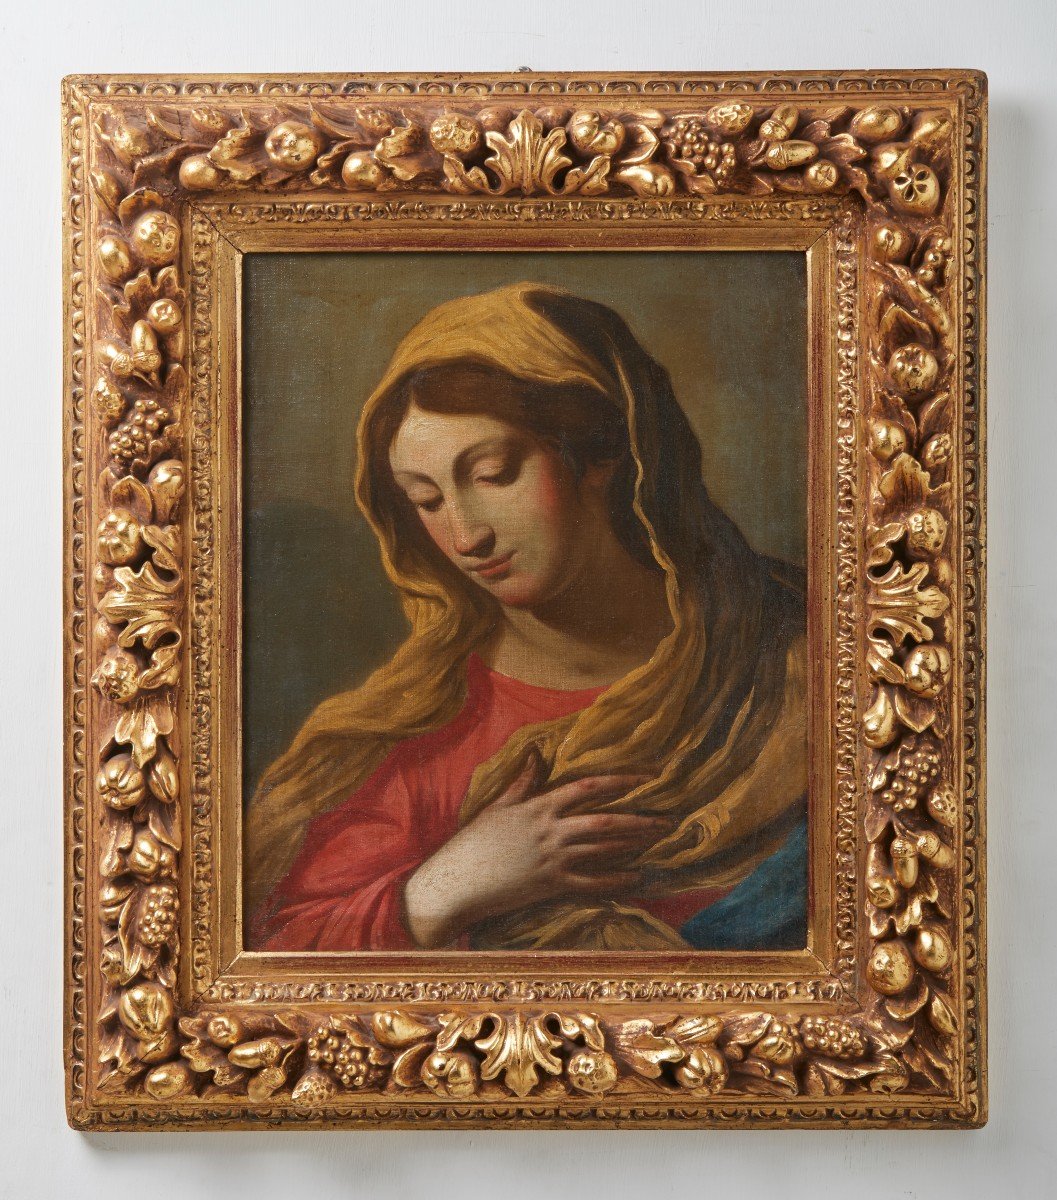 Vergine annunciata, scuola emiliana, XVII° secolo.v